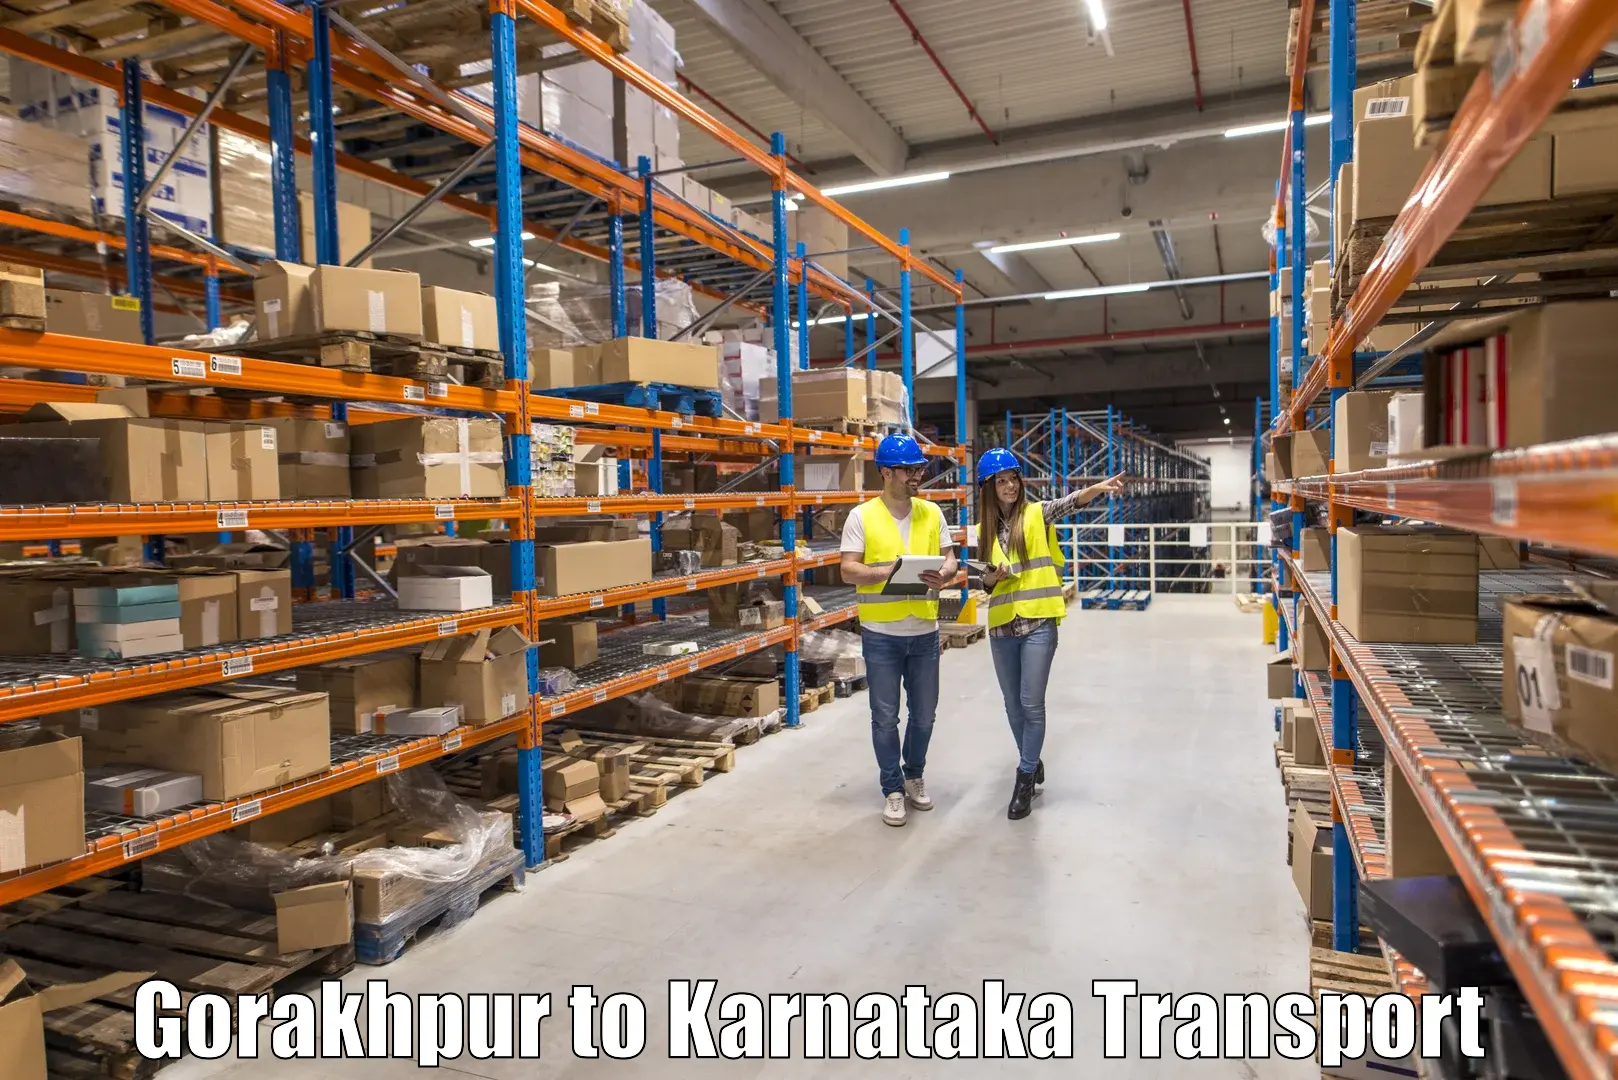 Online transport service Gorakhpur to Harugeri